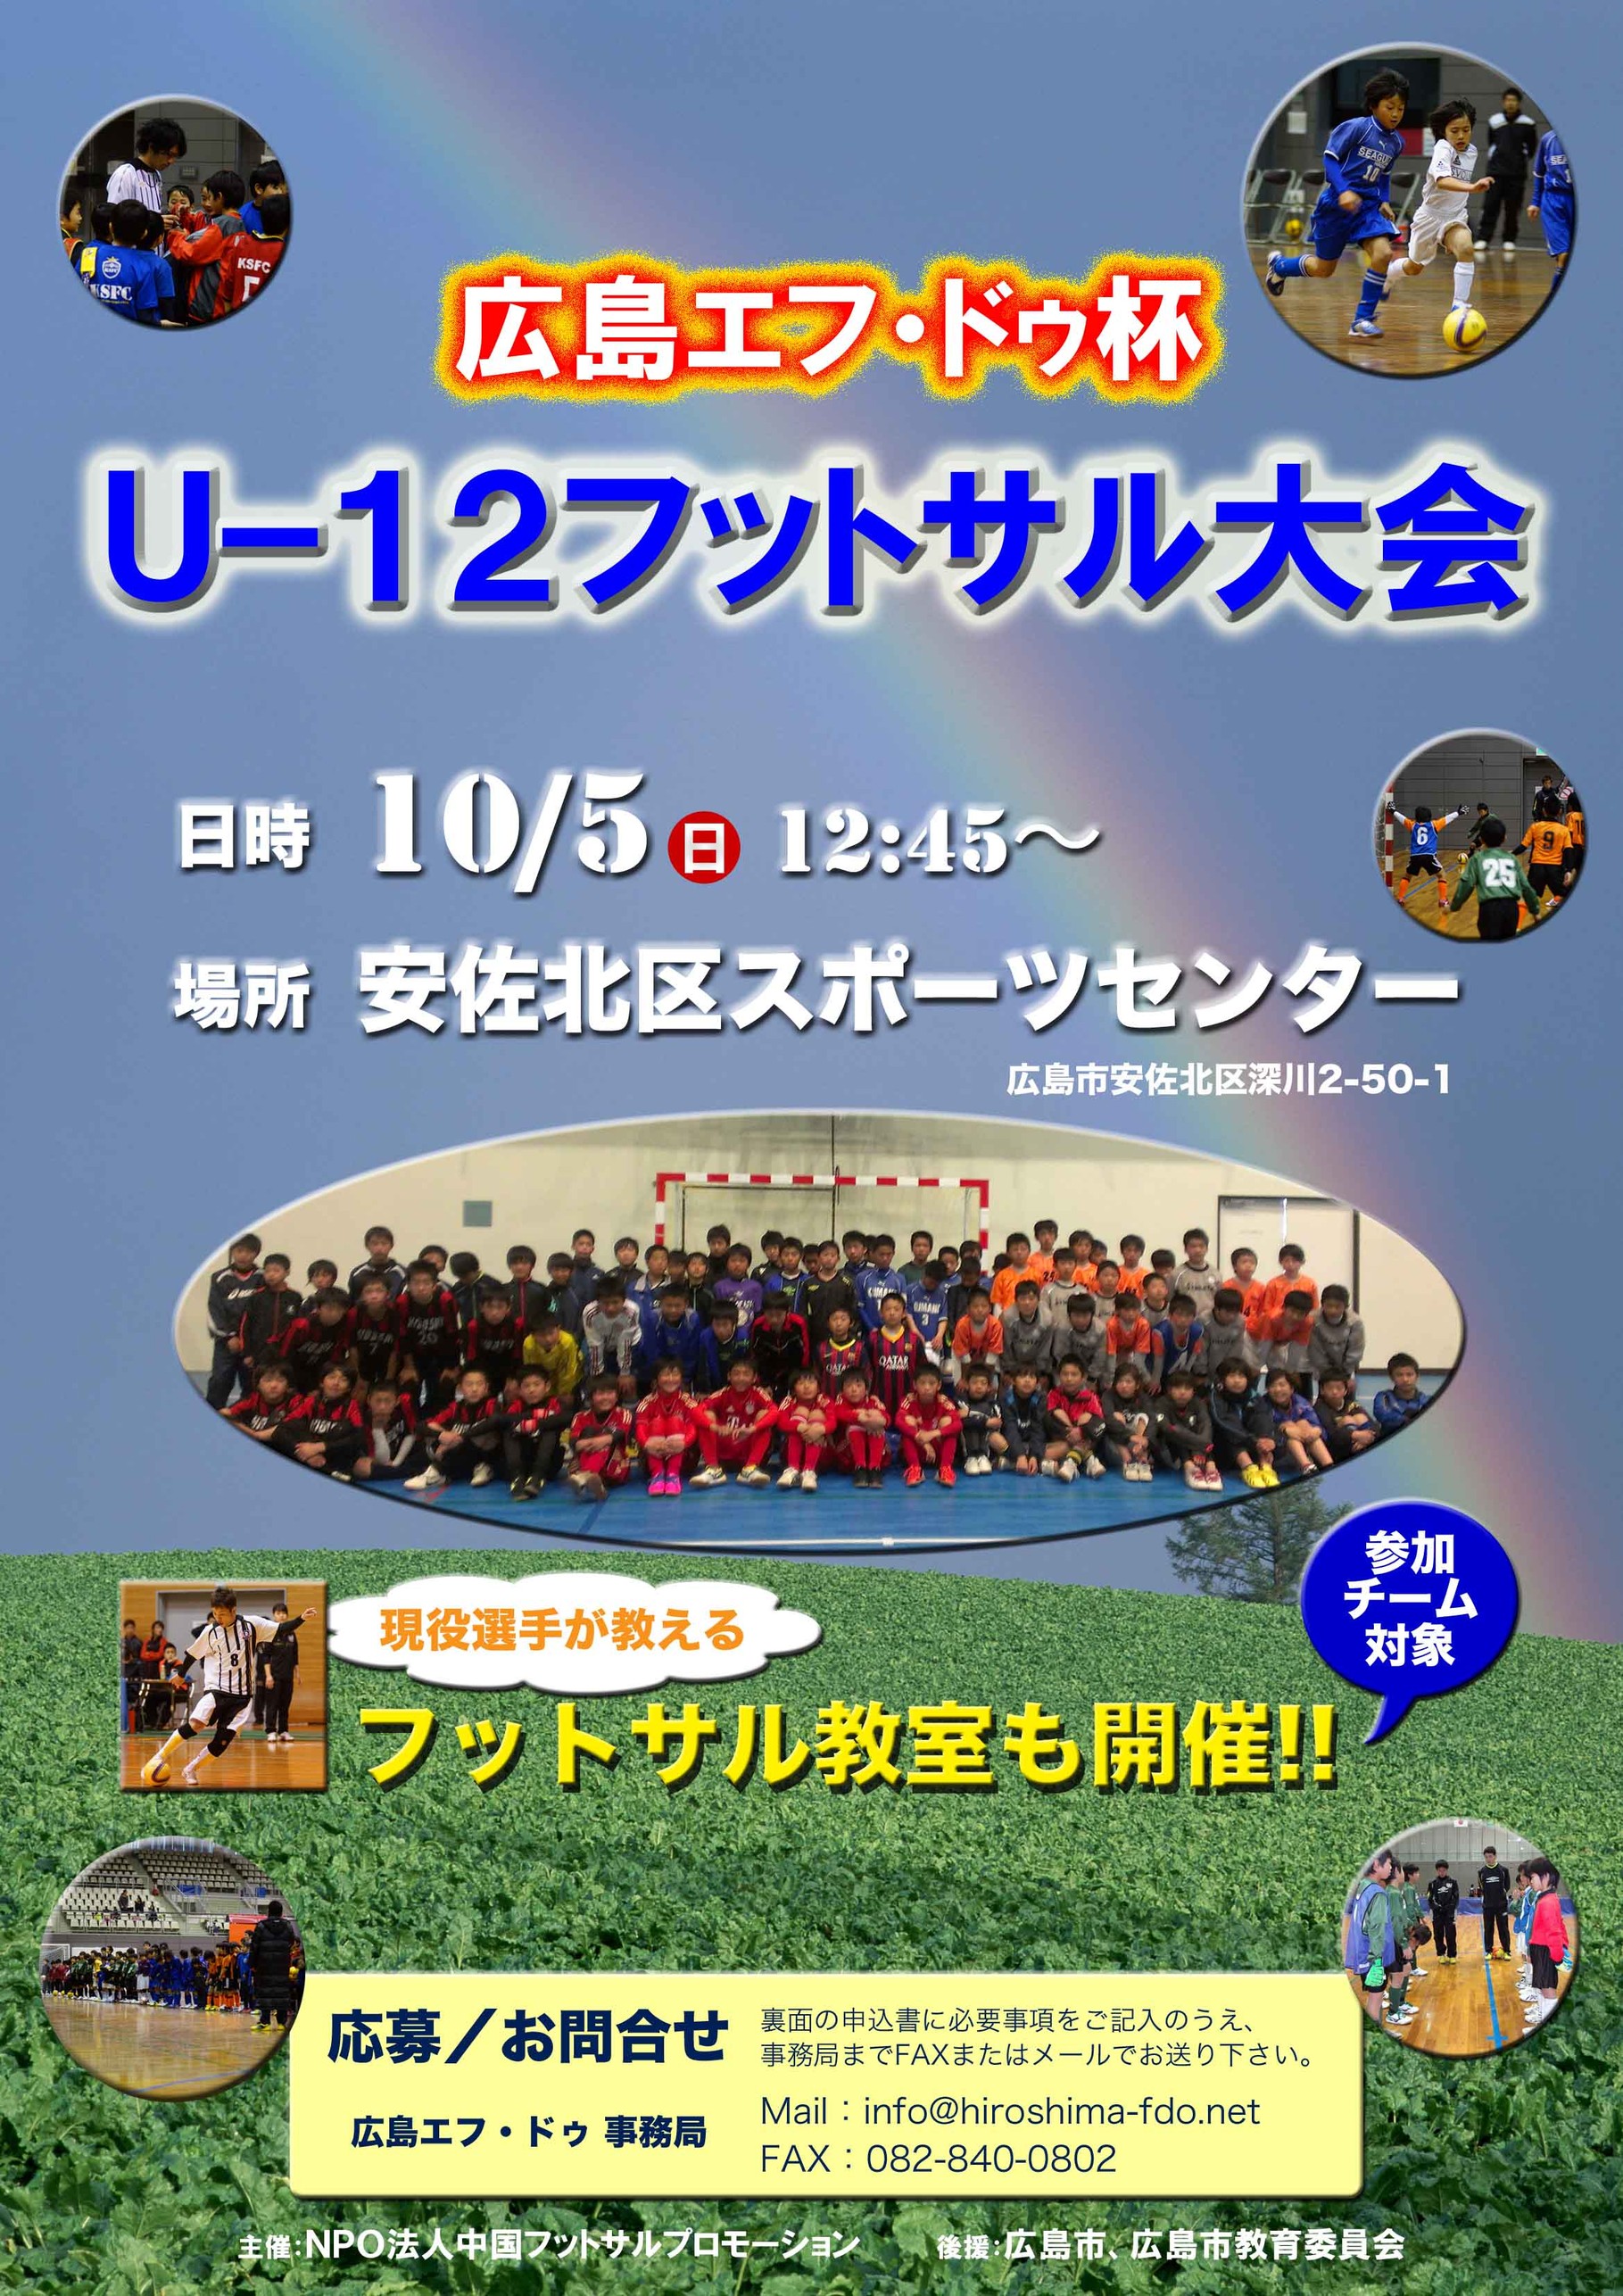 参加チーム募集 広島エフ ドゥ杯u 12フットサル大会開催 広島f Doオフィシャルウェブサイト